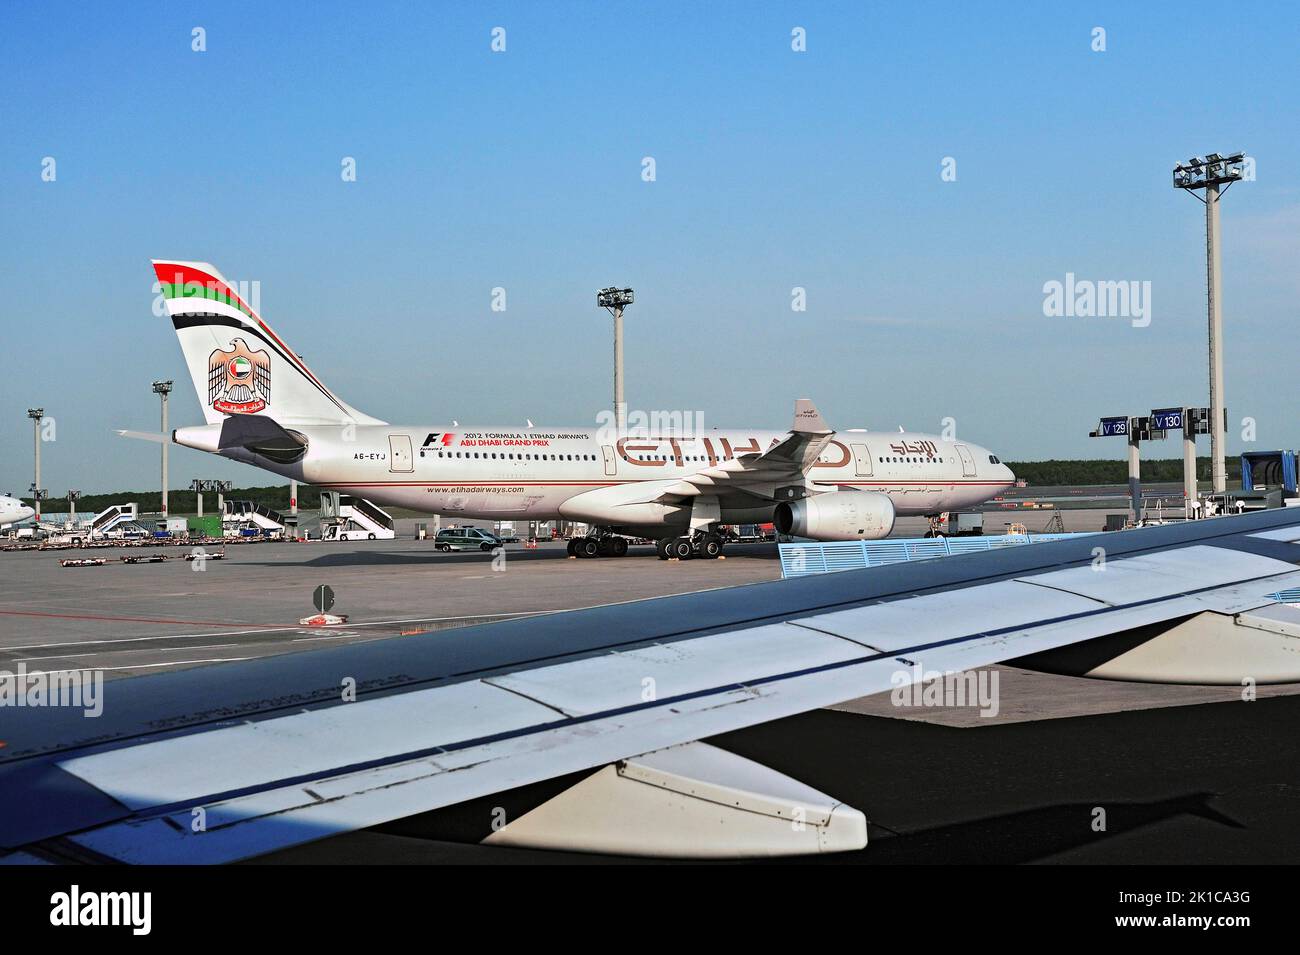 Etihad-Airways, Abu-Dhabi Emirate Airbus A330-243, Aeroporto, Francoforte, Assia, Germania Foto Stock